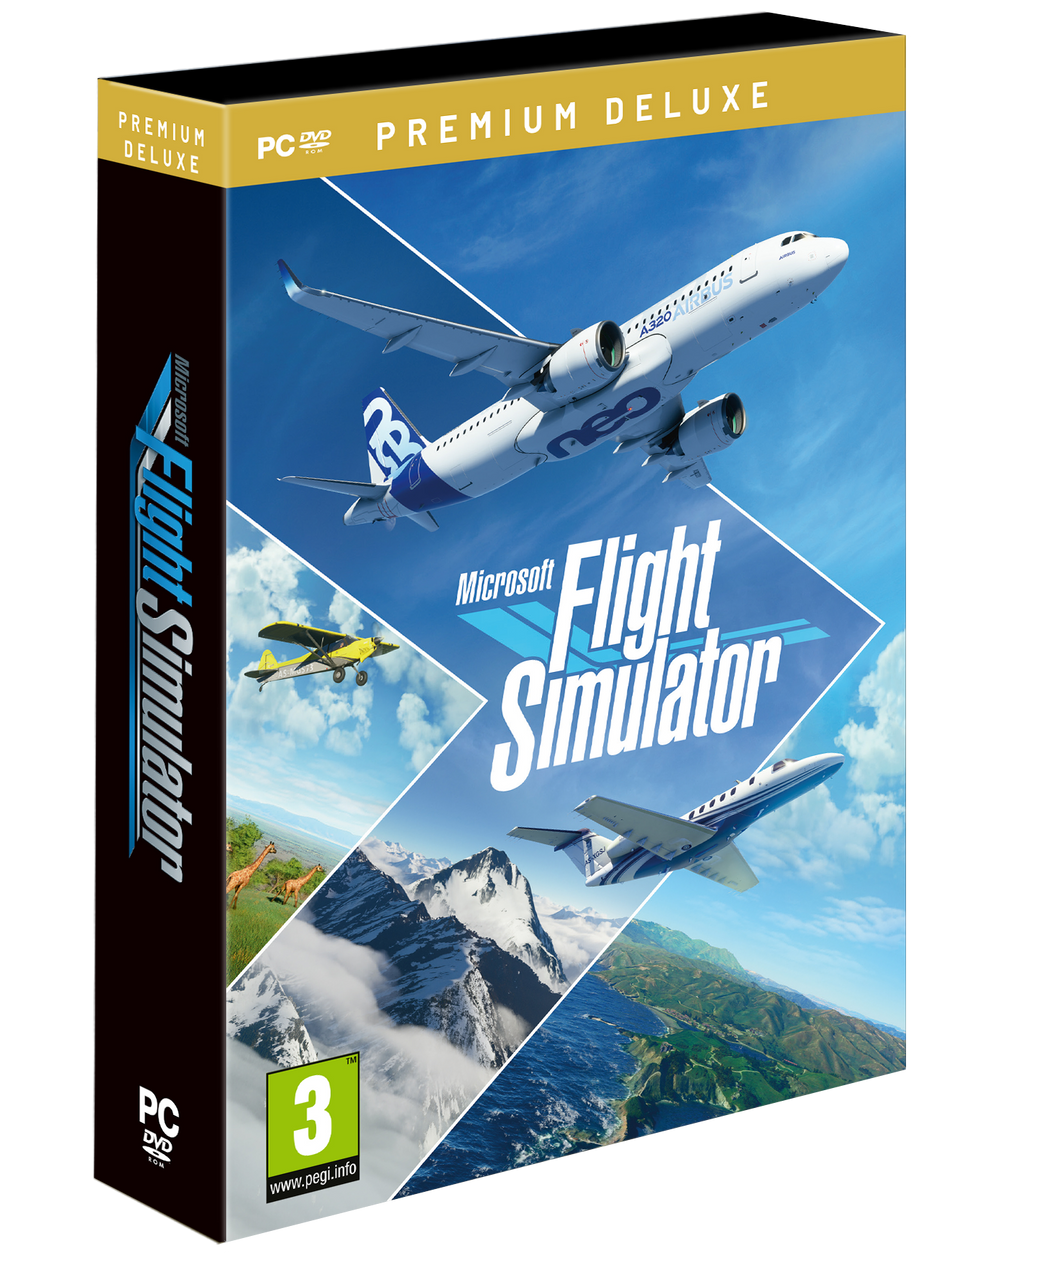 Microsoft Flight Simulator 2020 - Premium Deluxe PC Game